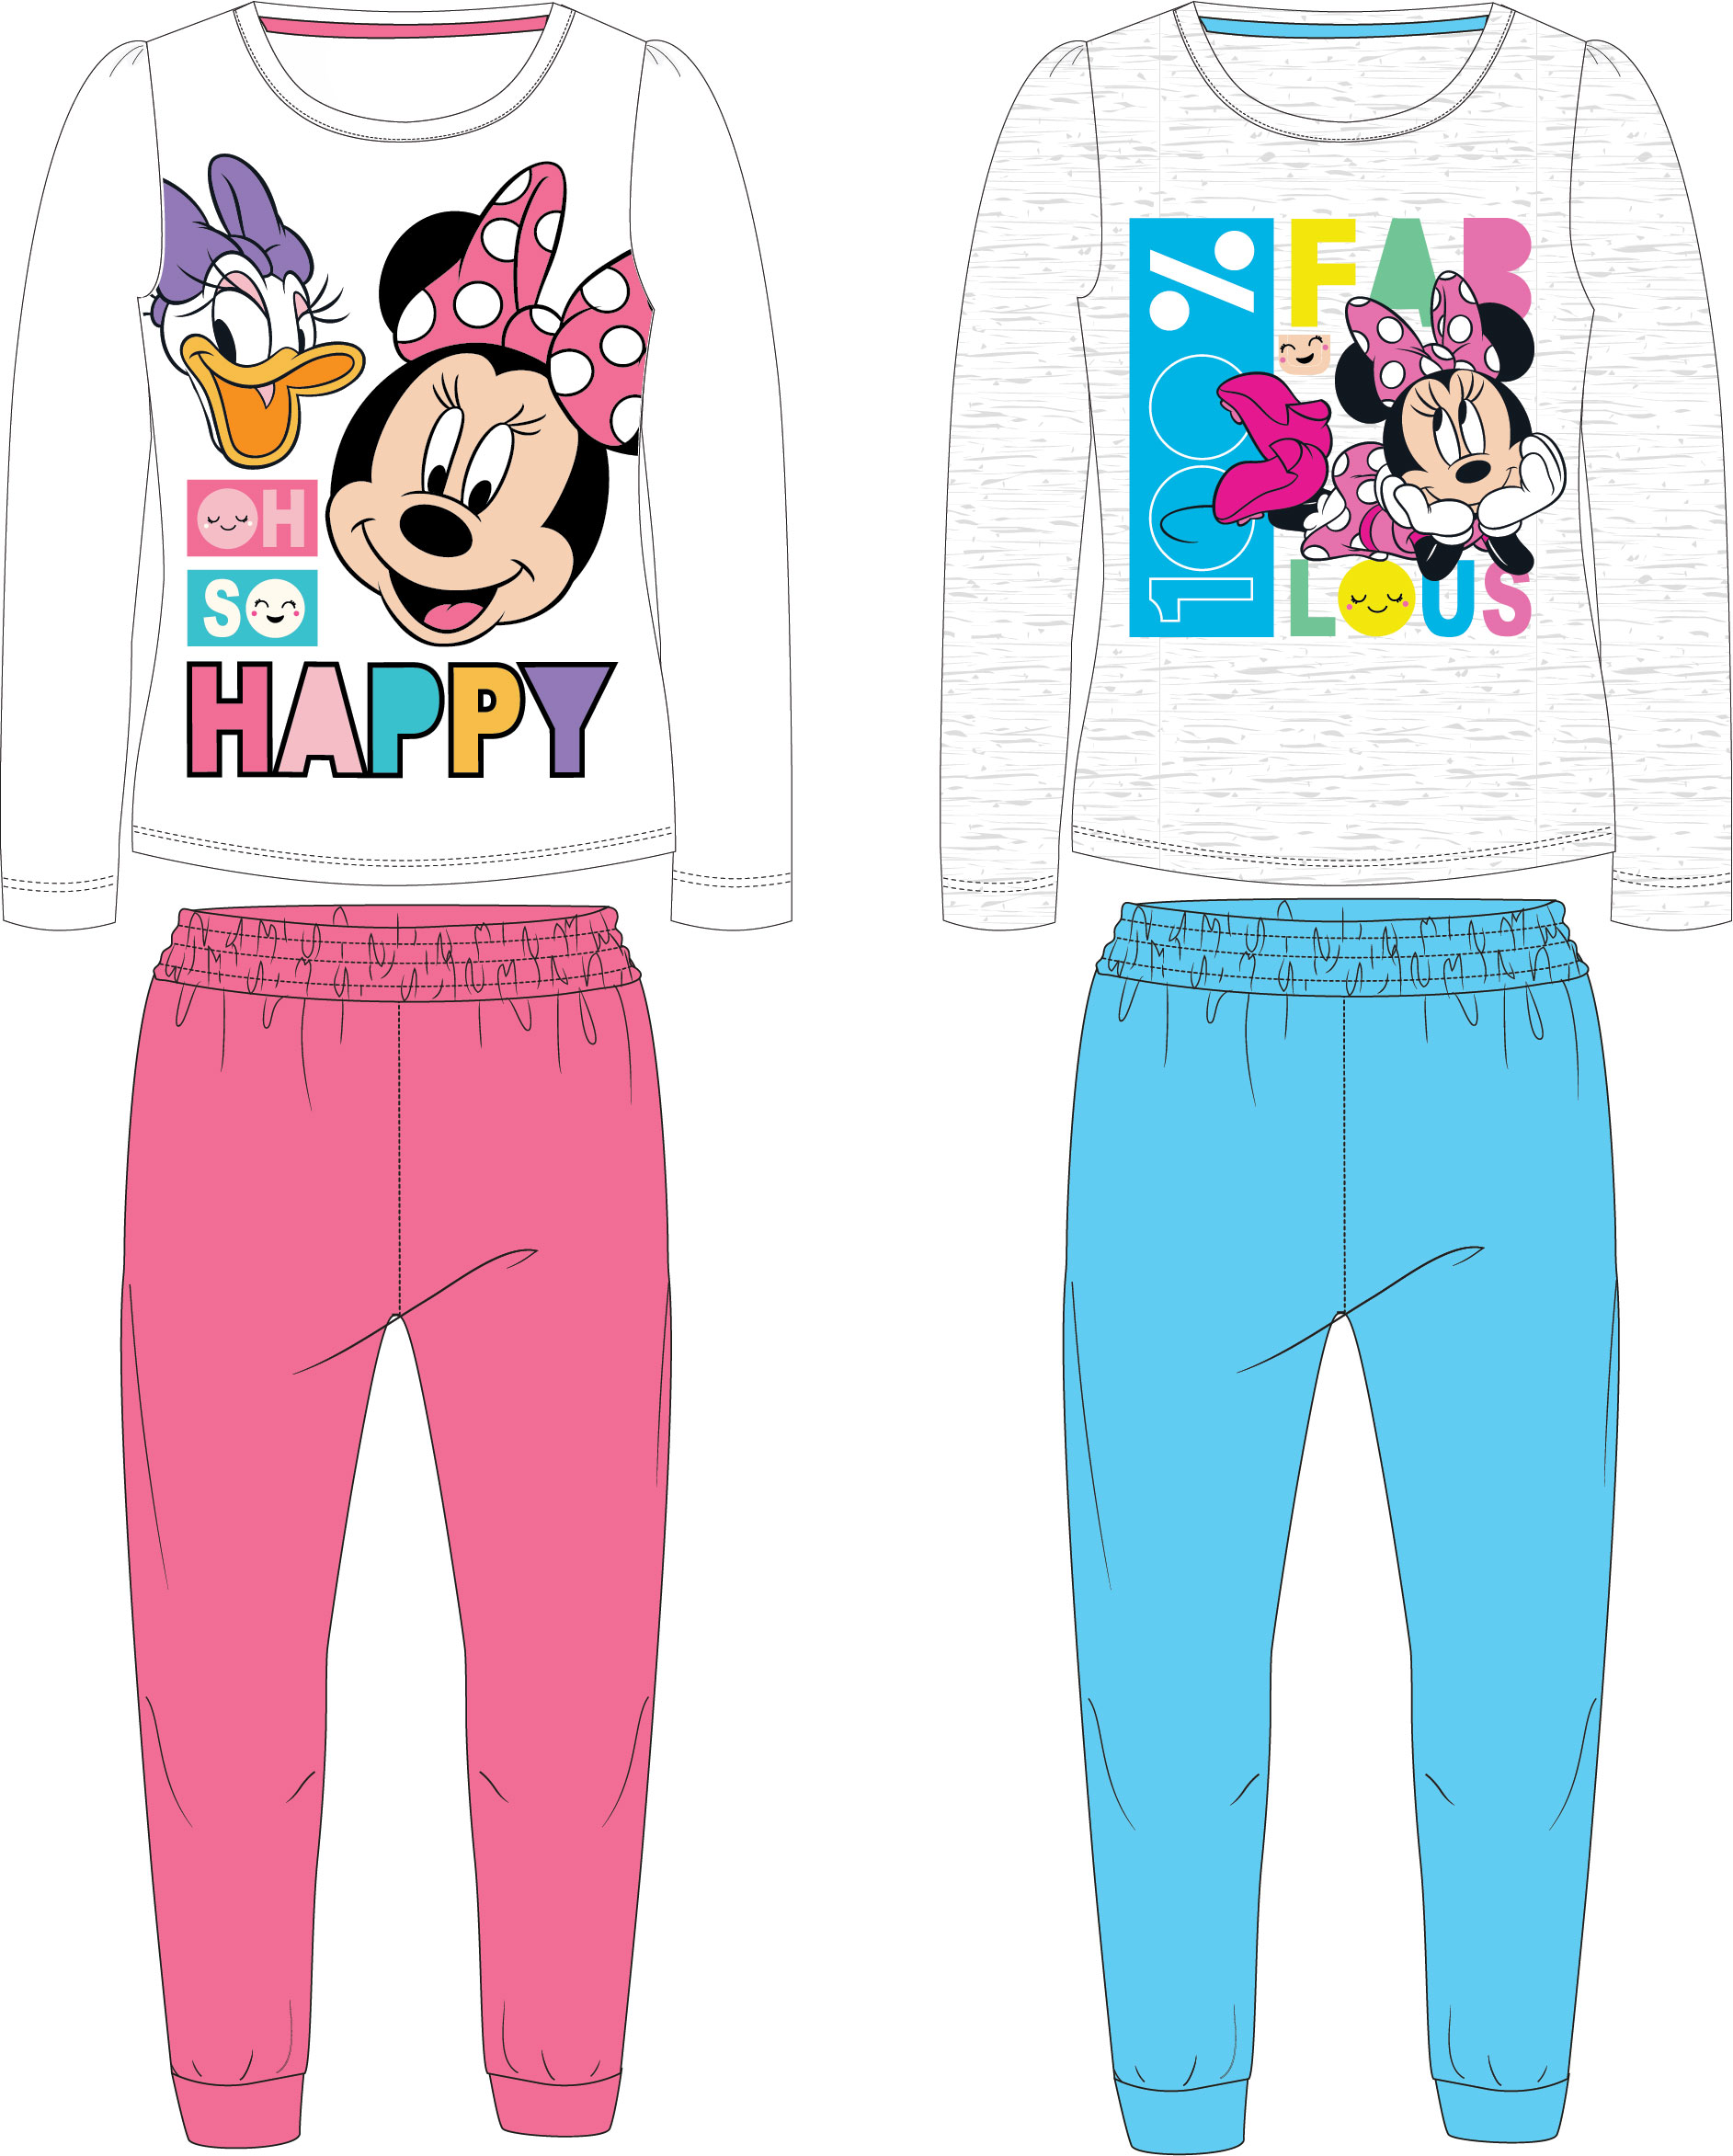 Minnie Mouse - licence Dívčí pyžamo - Minnie Mouse 52049146, šedá / světle modré kalhoty Barva: Šedá, Velikost: 134